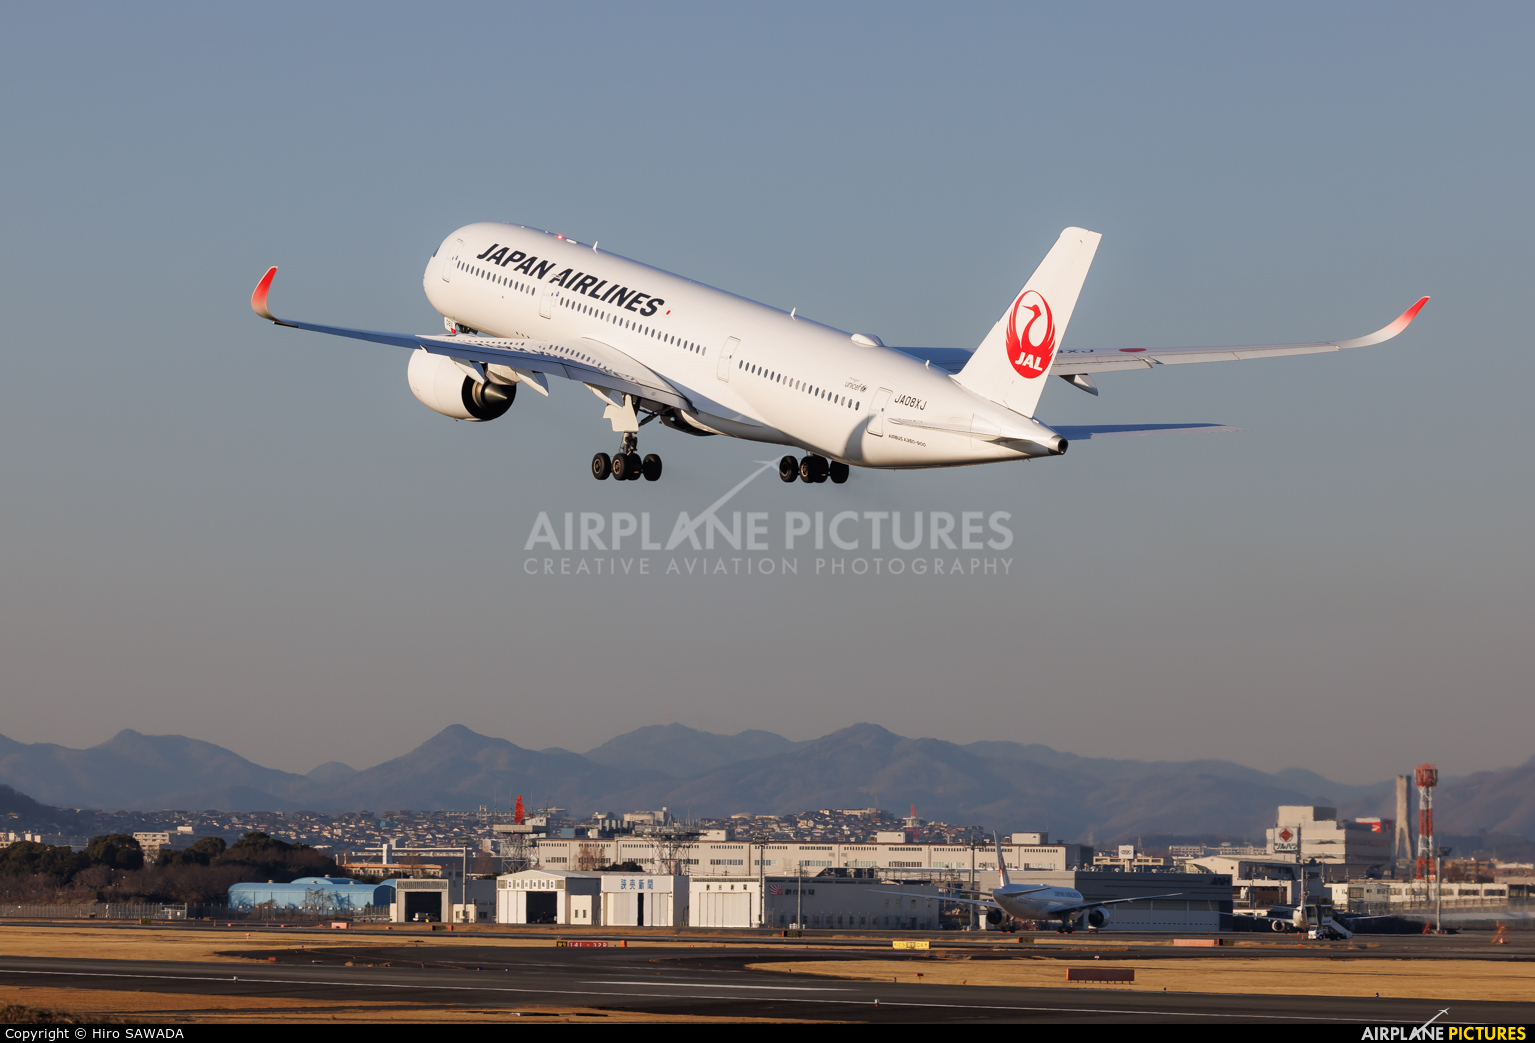 JAL - Japan Airlines JA08XJ aircraft at Osaka - Itami Intl